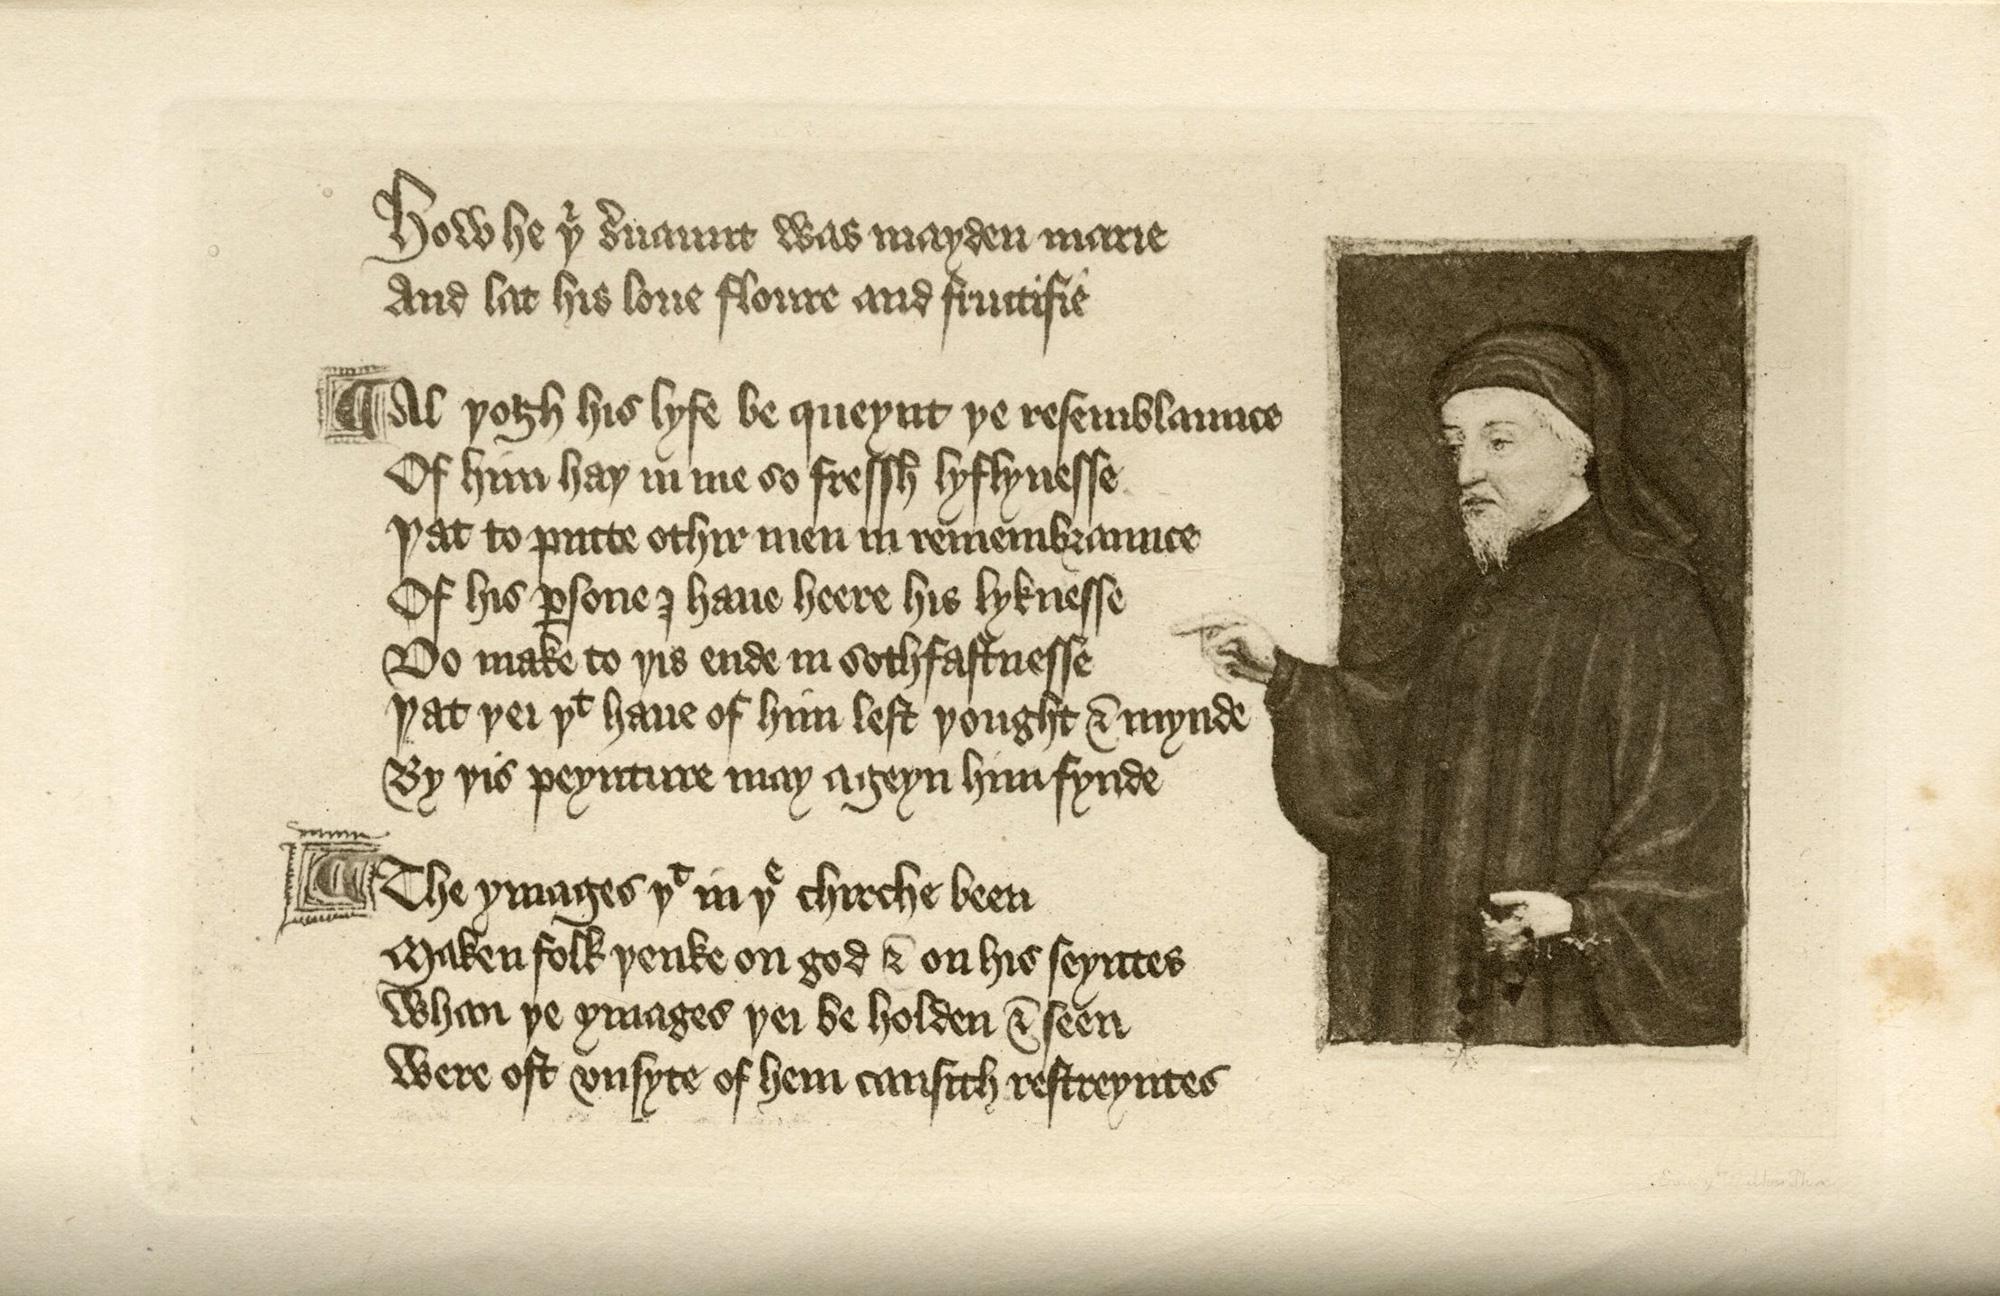 Las Obras Completas de Geoffrey Chaucer; 
Editado a partir de numerosos manuscritos por el reverendo. Walter W. Skeat

Oxford: The Clarendon Press, 1920
8vo, 7 1/2 x 5 1/2 pulg. (190 x 133 mm); pp xxi, 732 , 149 Índice glosarial; frontispicio